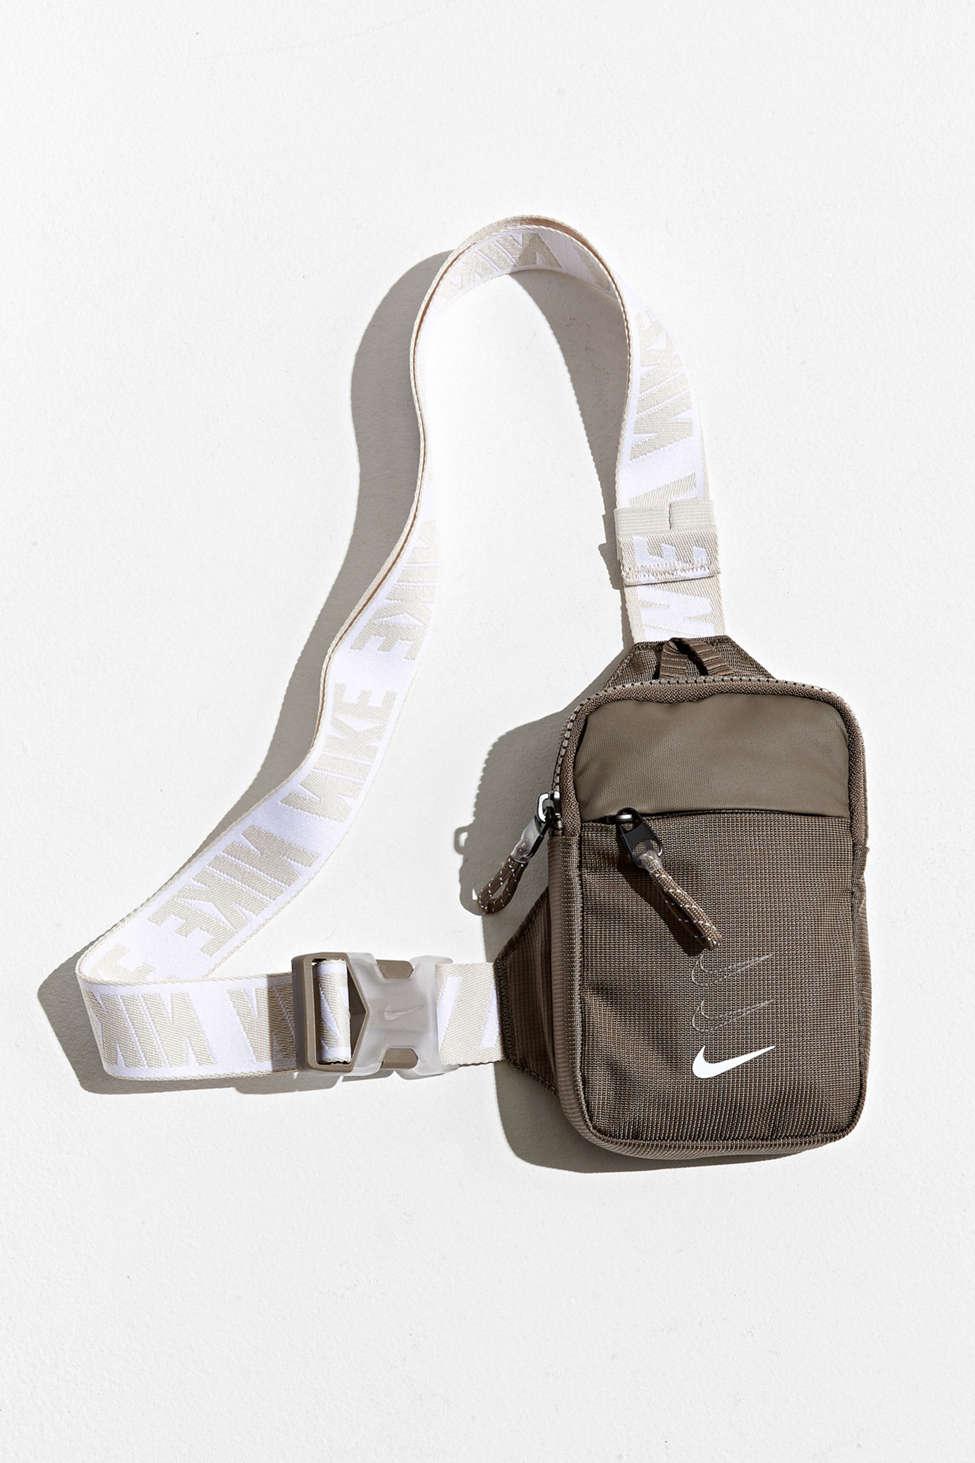 Stor vrangforestilling grus fad Nike Sportswear Essential Sling Bag for Men | Lyst